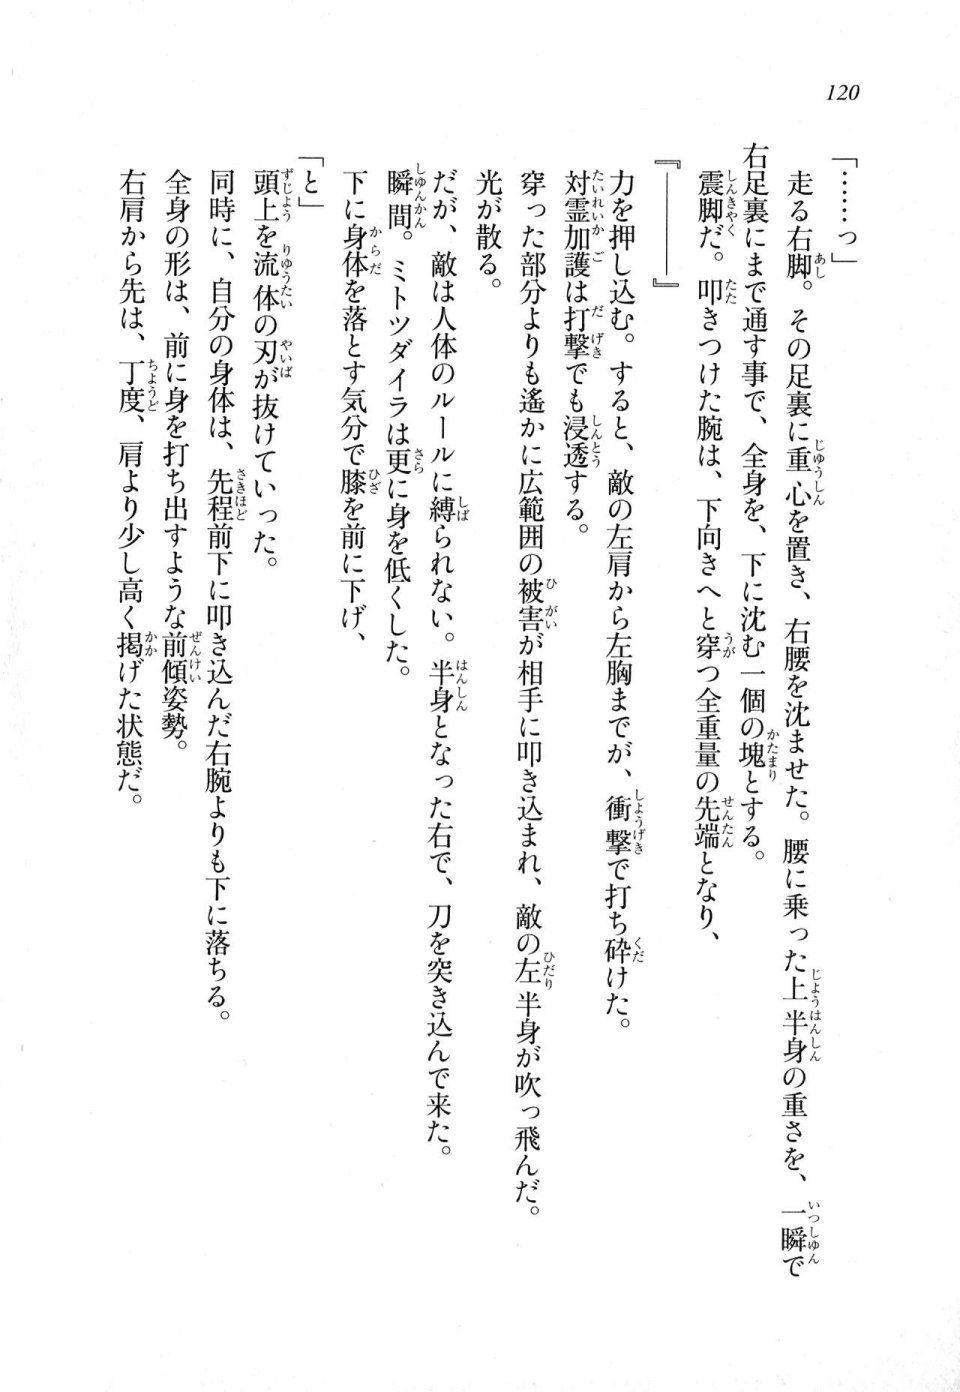 Kyoukai Senjou no Horizon LN Sidestory Vol 1 - Photo #118